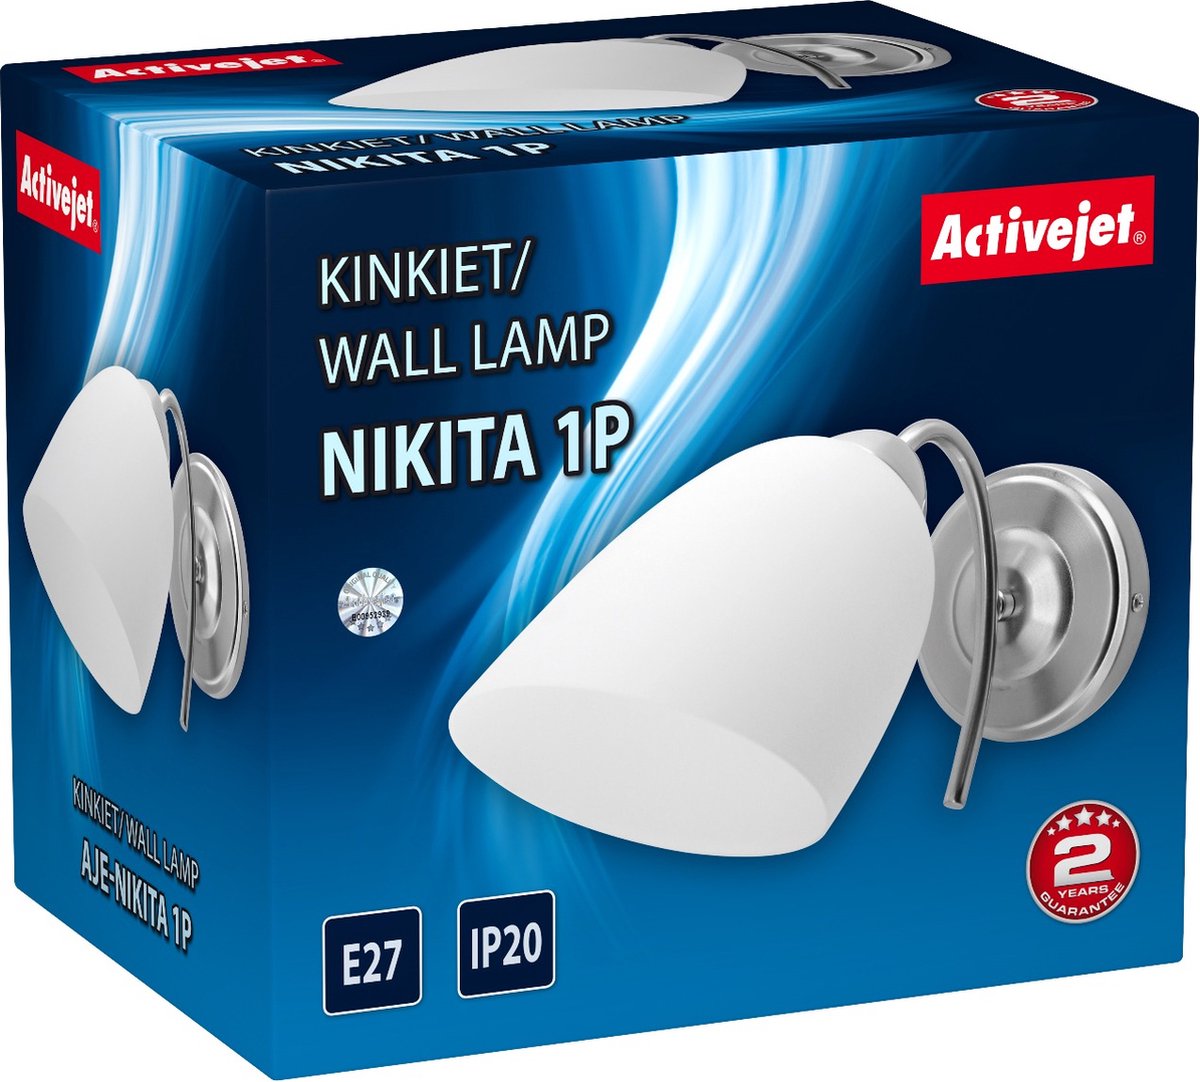 ActiveJet Spot Lamp Nikita 1P E27 1x60 W Nikkel.